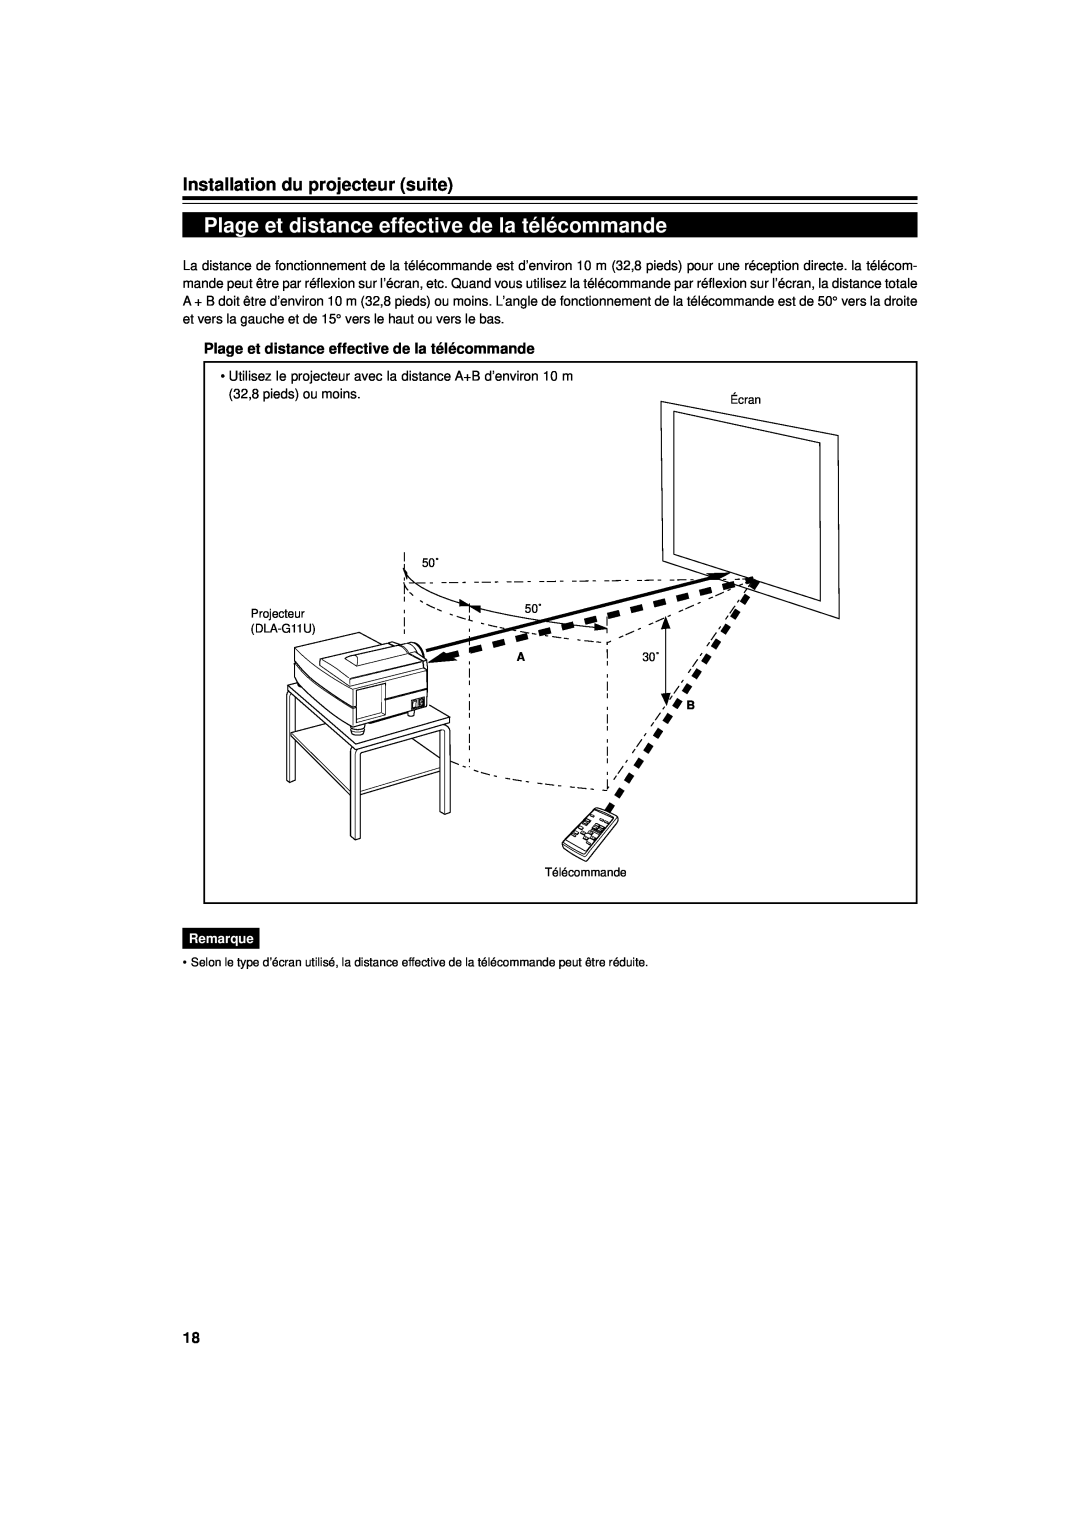 JVC DLA-G11U manual Plage et distance effective de la télécommande, Installation du projecteur suite, Remarque 